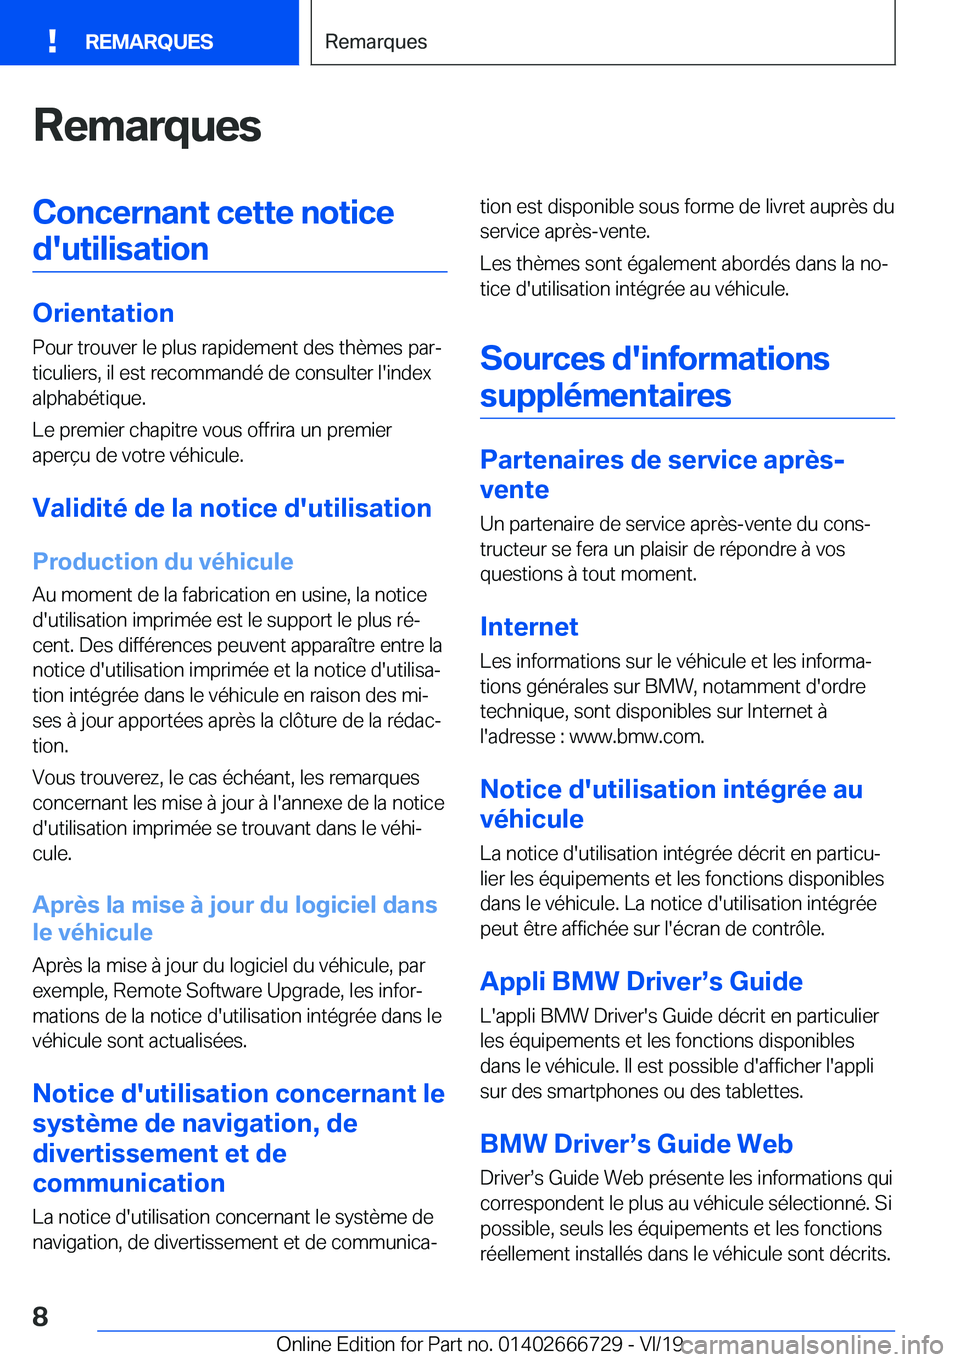 BMW M5 2020  Notices Demploi (in French) �R�e�m�a�r�q�u�e�s�C�o�n�c�e�r�n�a�n�t��c�e�t�t�e��n�o�t�i�c�e�d�'�u�t�i�l�i�s�a�t�i�o�n
�O�r�i�e�n�t�a�t�i�o�n �P�o�u�r��t�r�o�u�v�e�r��l�e��p�l�u�s��r�a�p�i�d�e�m�e�n�t��d�e�s��t�h�è�m�